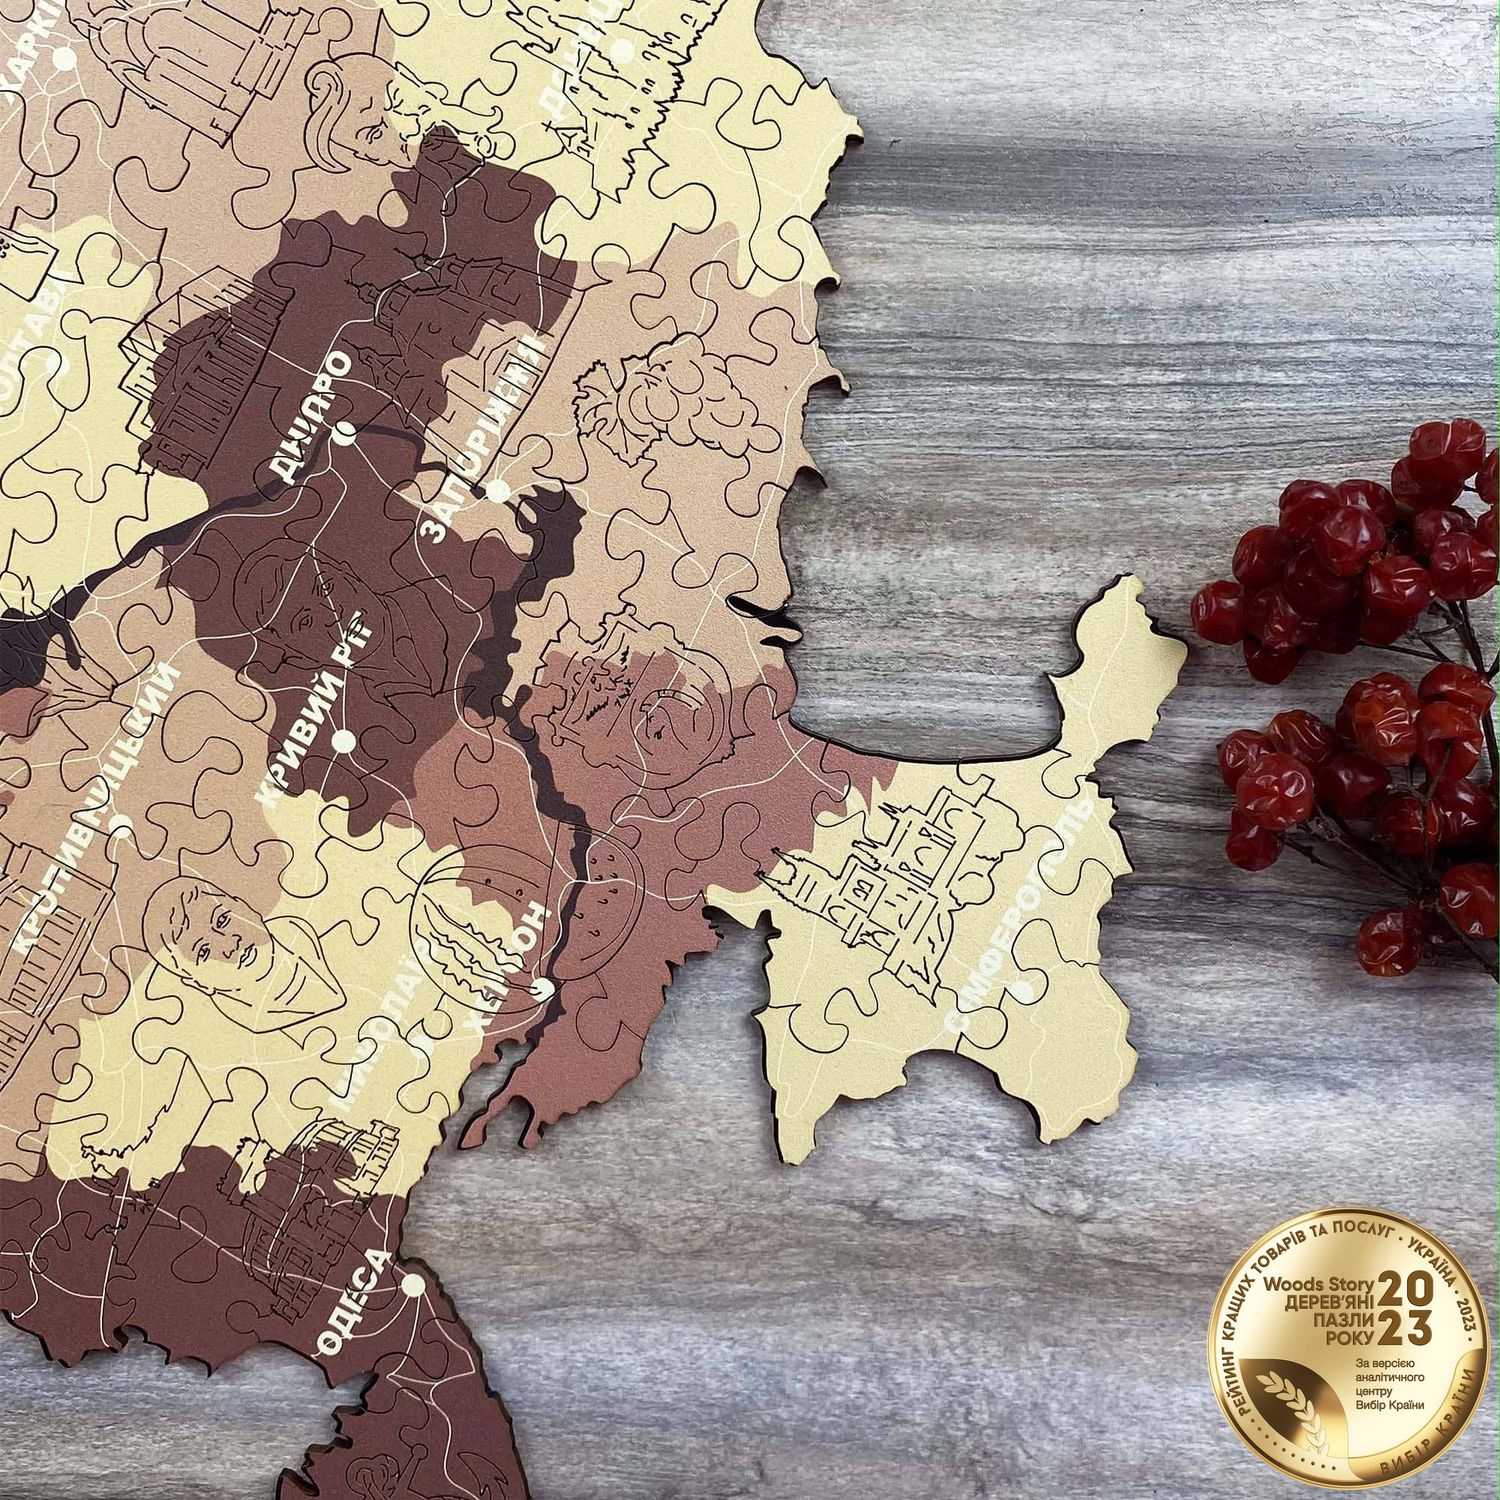 Патріотичний дерев'яний пазл Карта України капучіно L